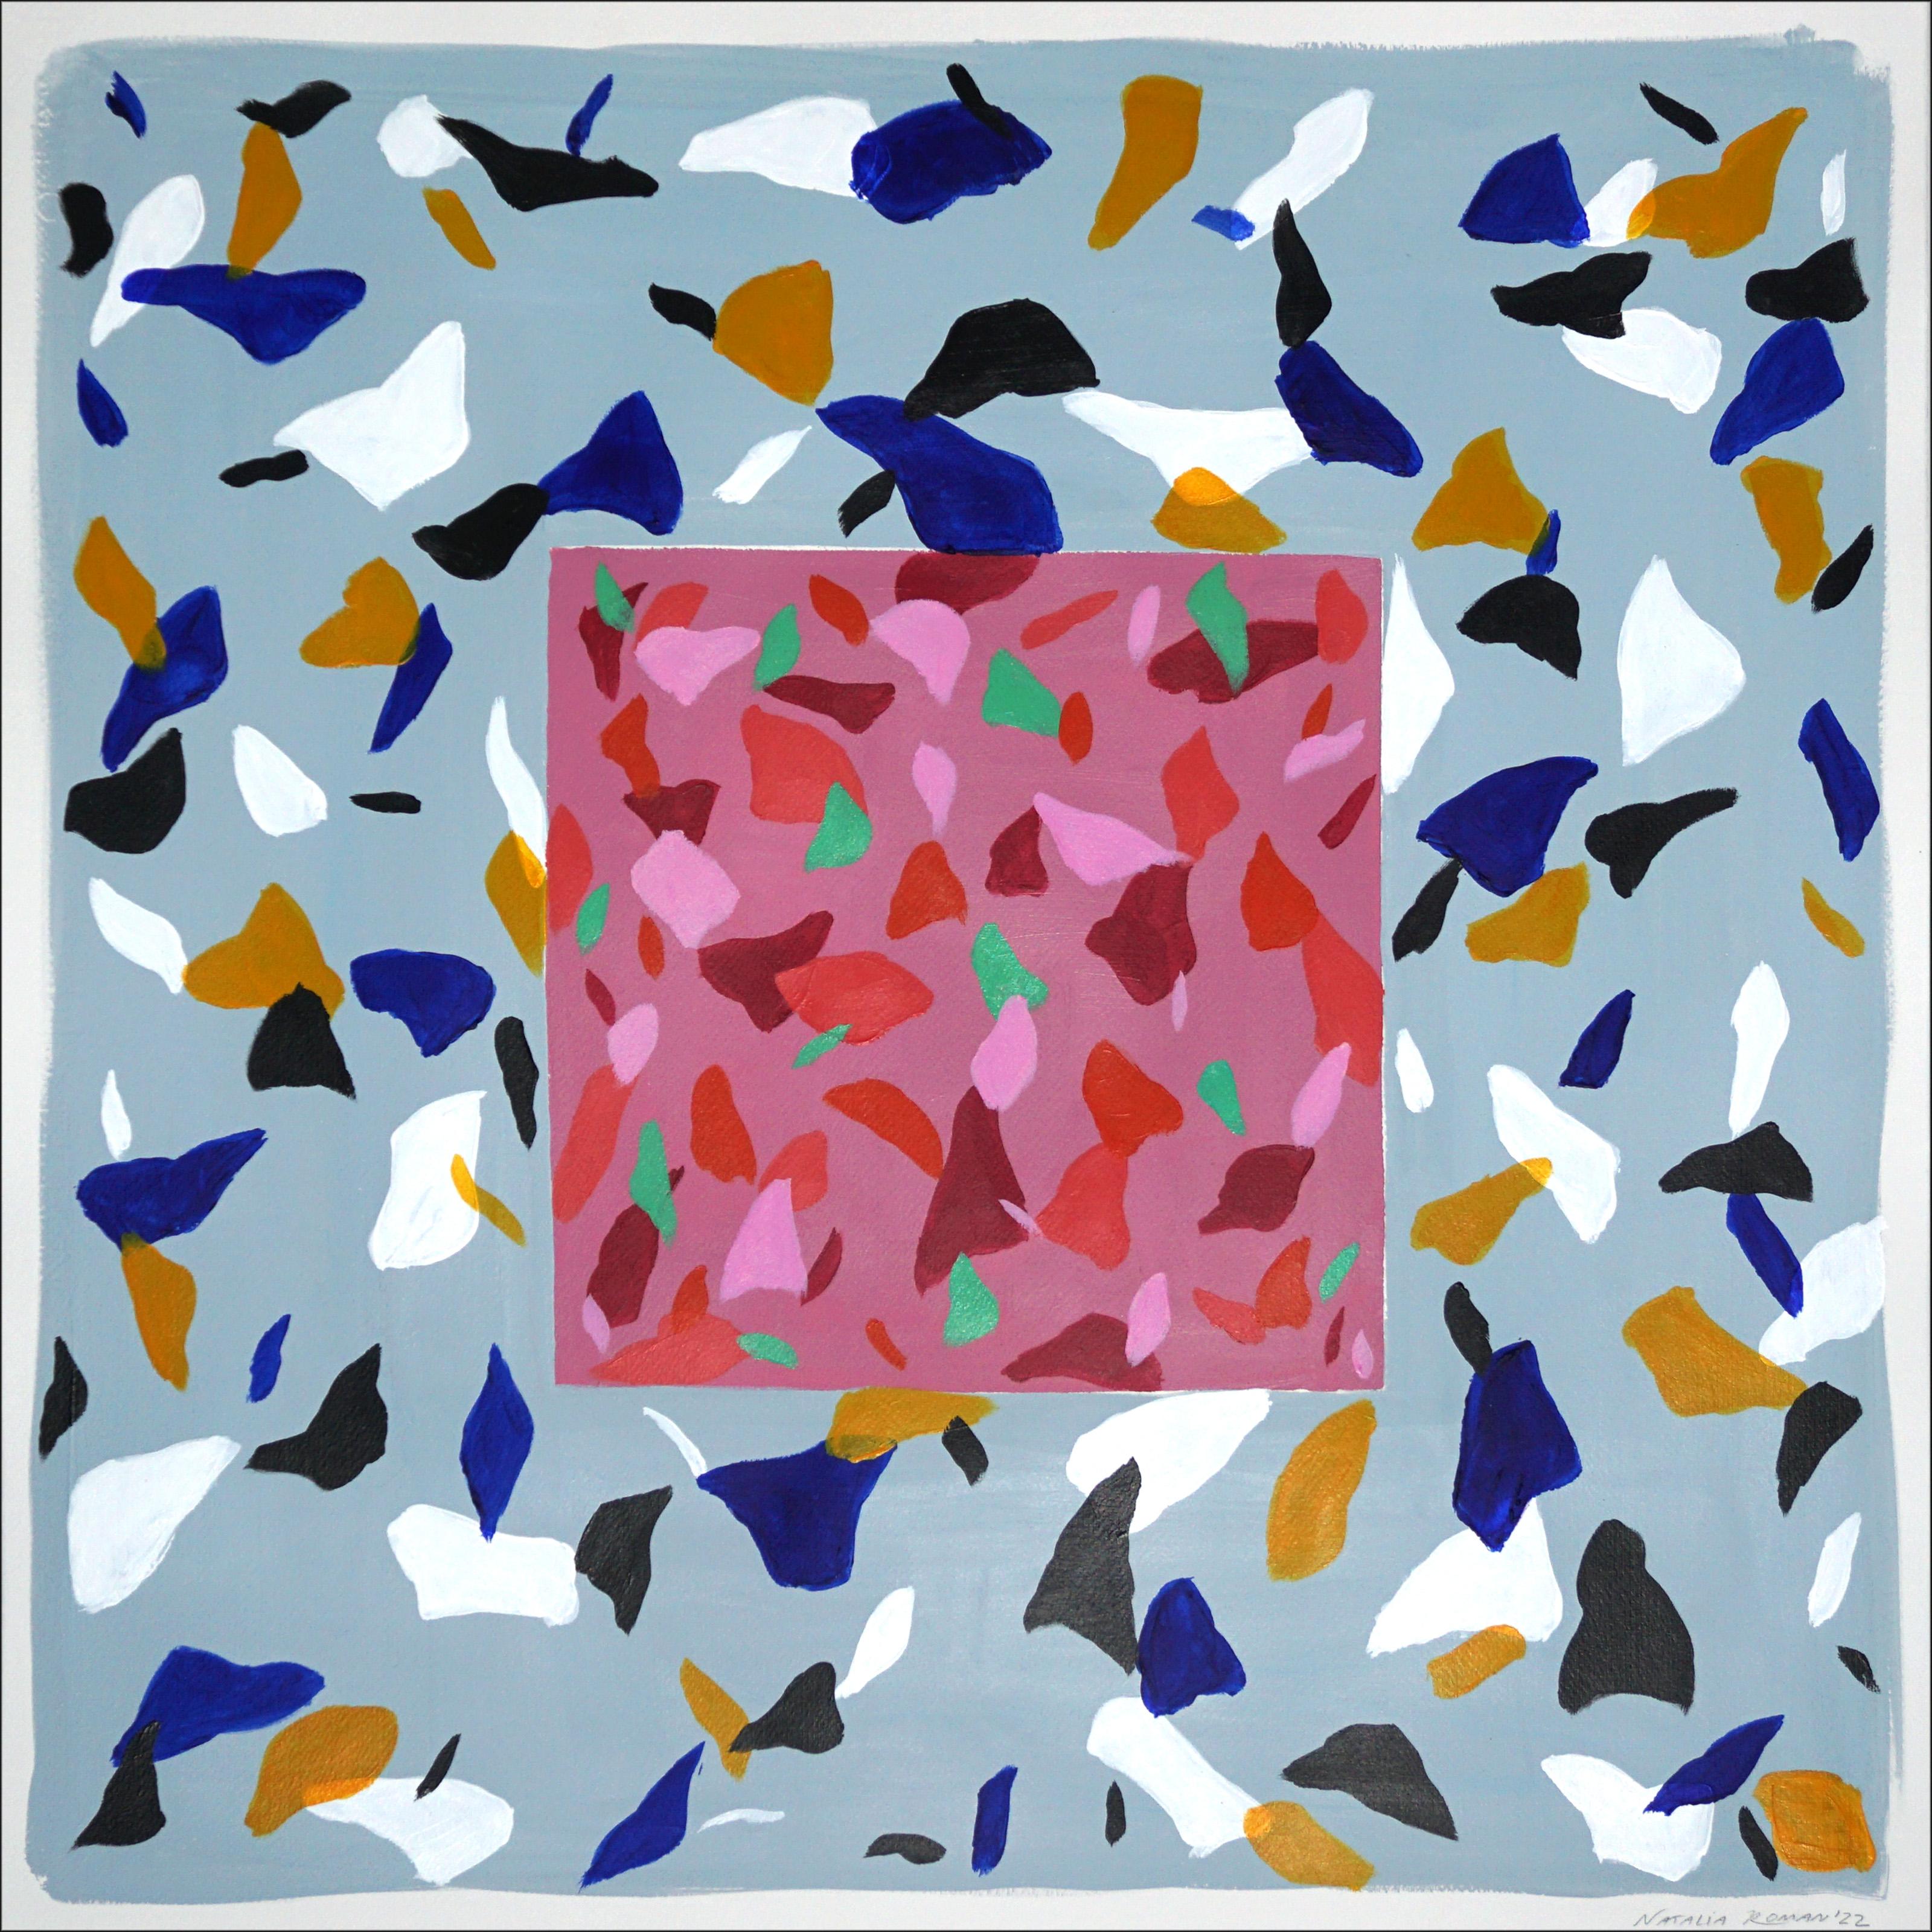 Mauvefarbene Camouflage auf Schiefer, quadratische Terrazzo-Fliesen in Rosa und Orange